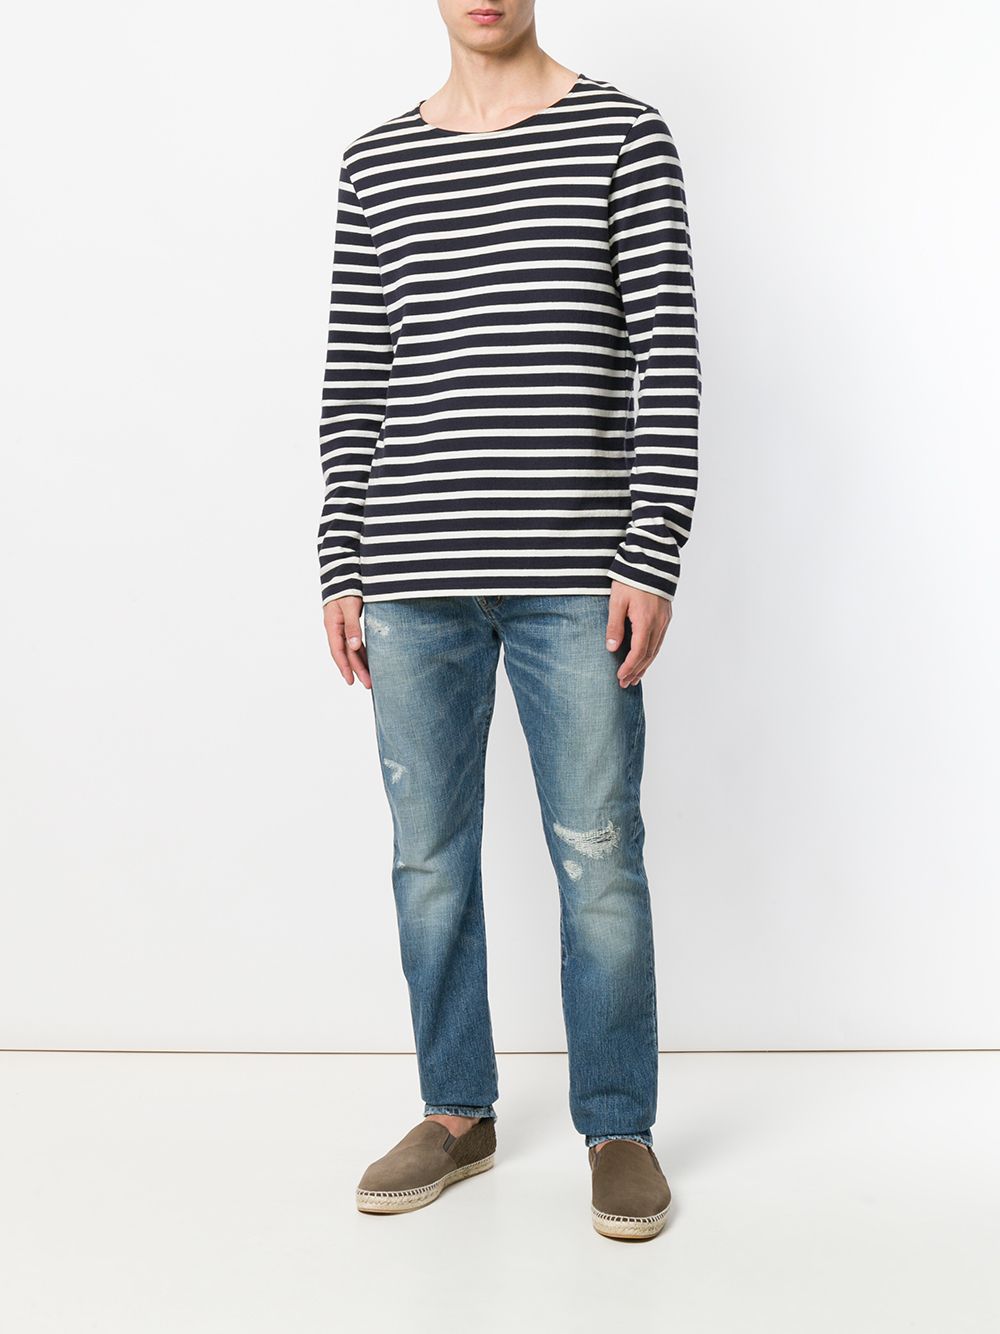 фото Saint Laurent джинсы с выцветшим эффектом